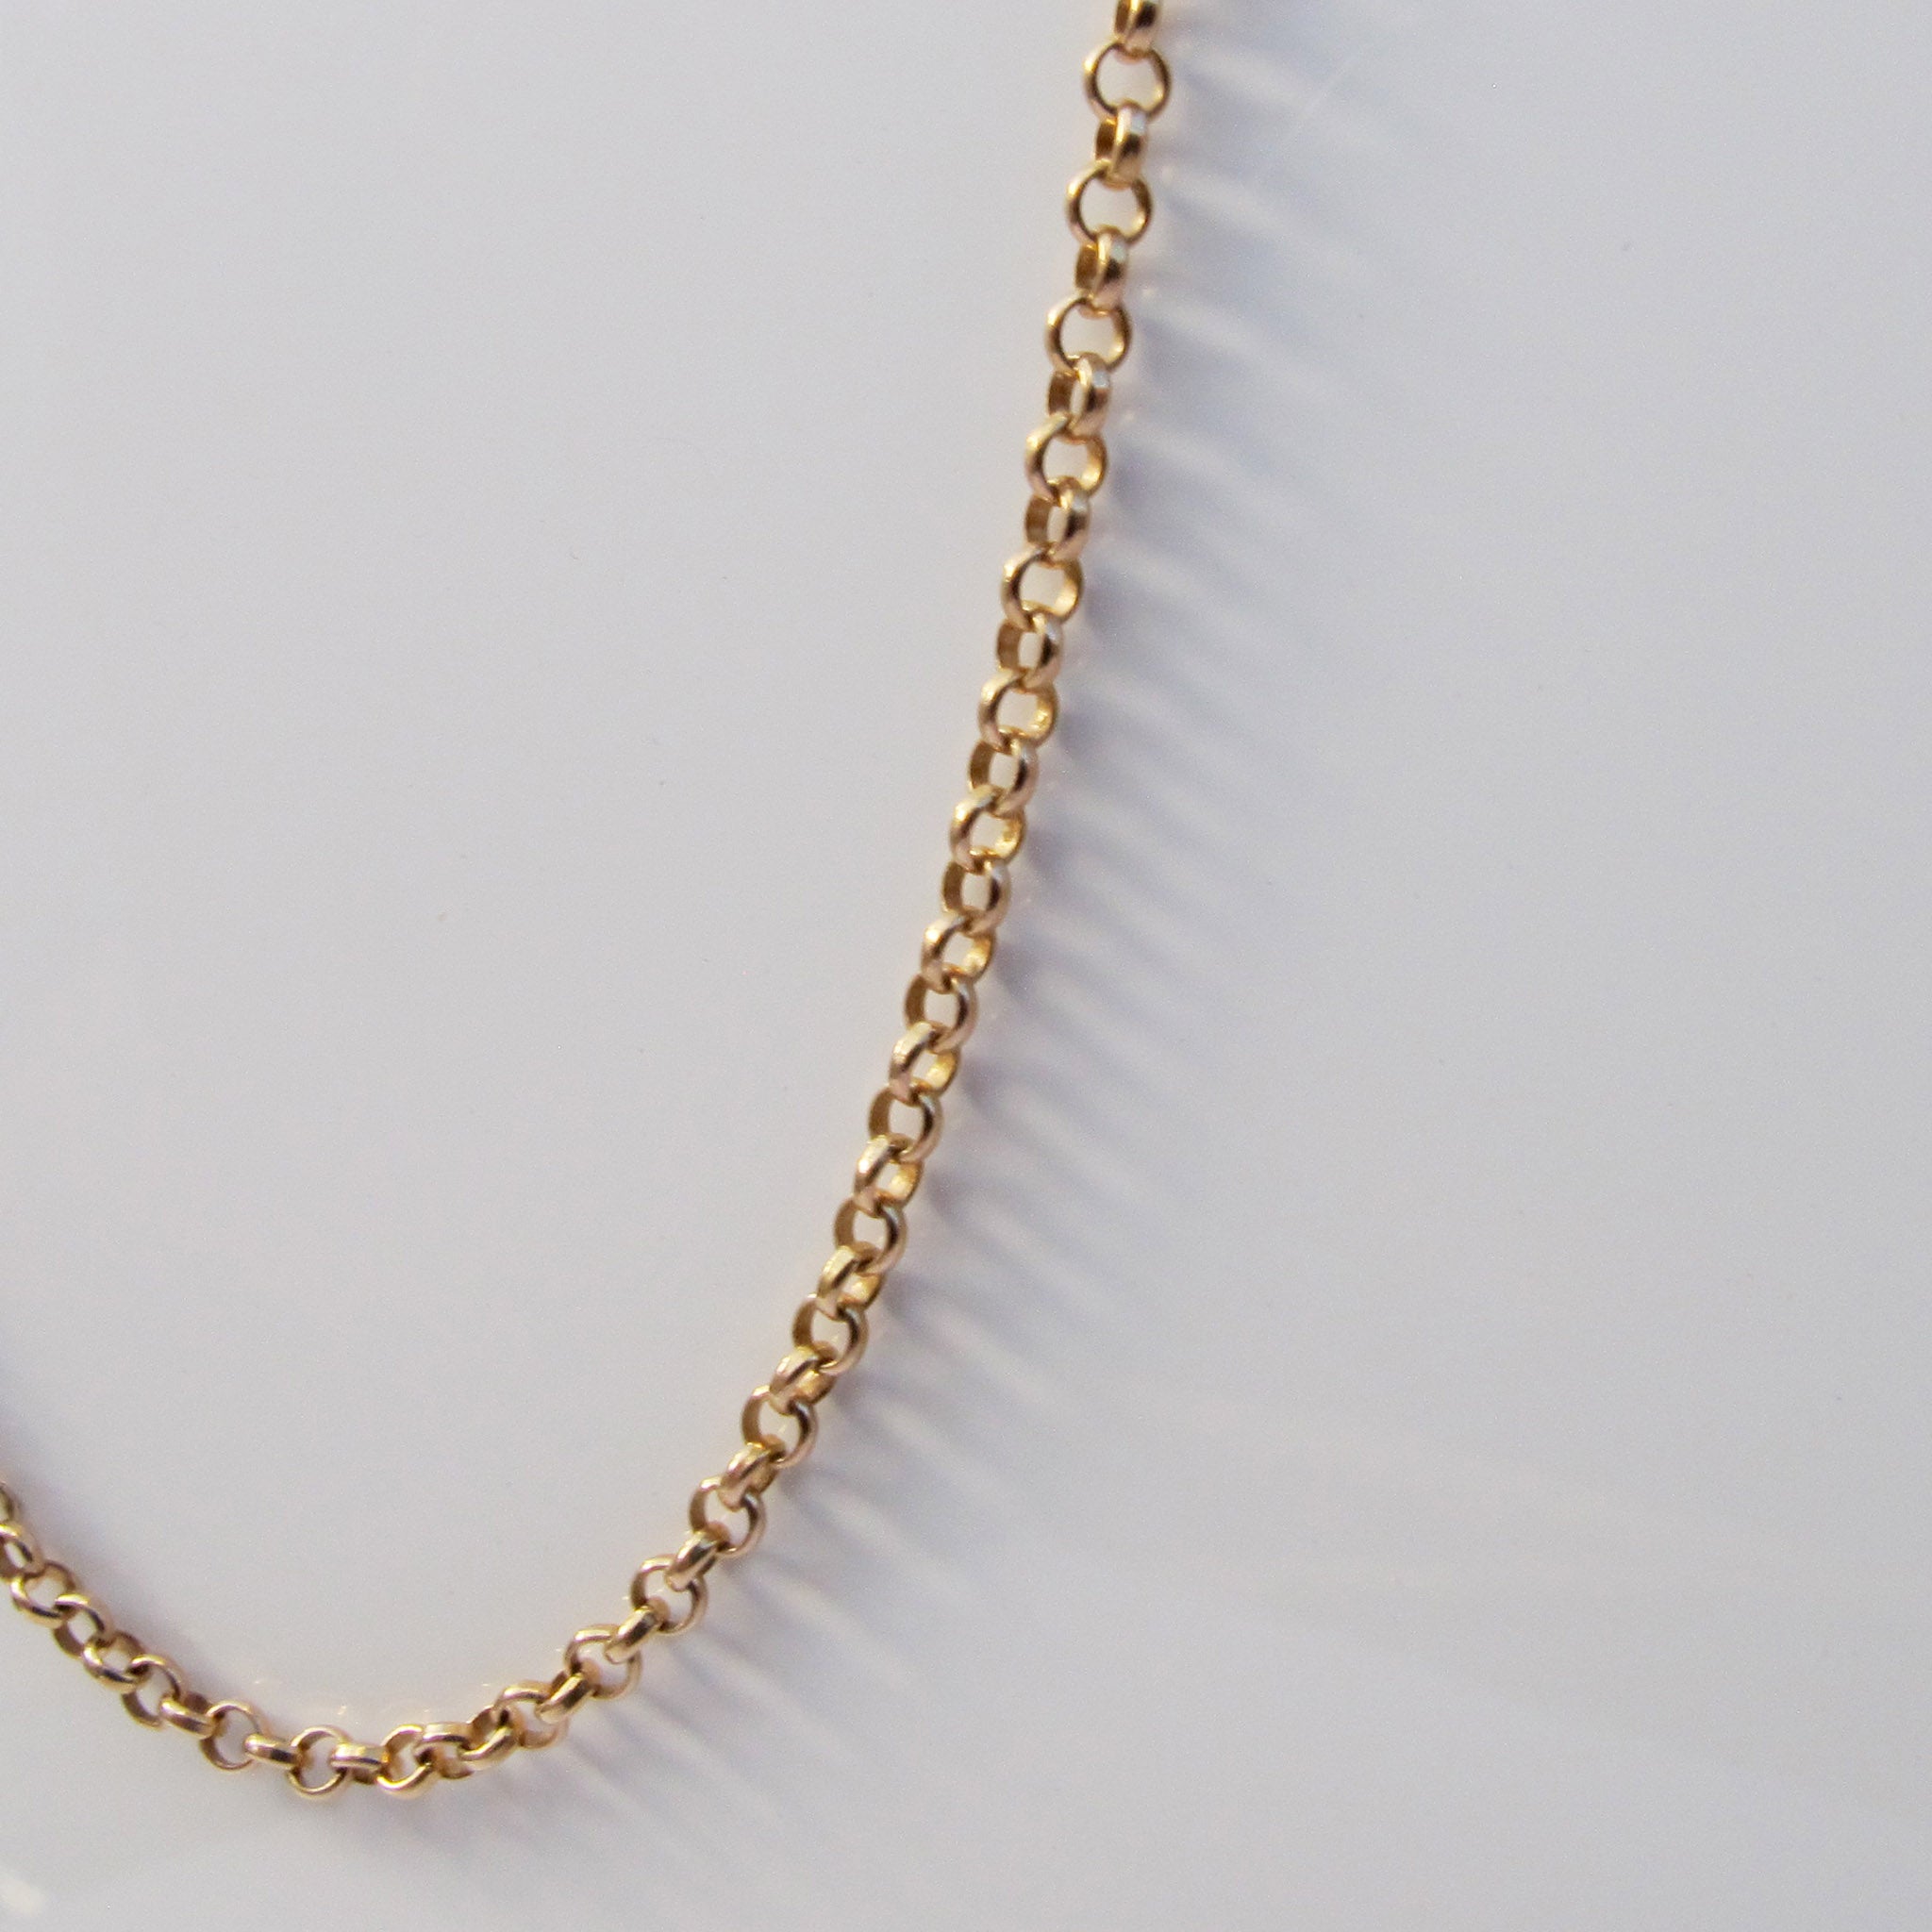 Belcher chain – Heart Sisters Jewelry